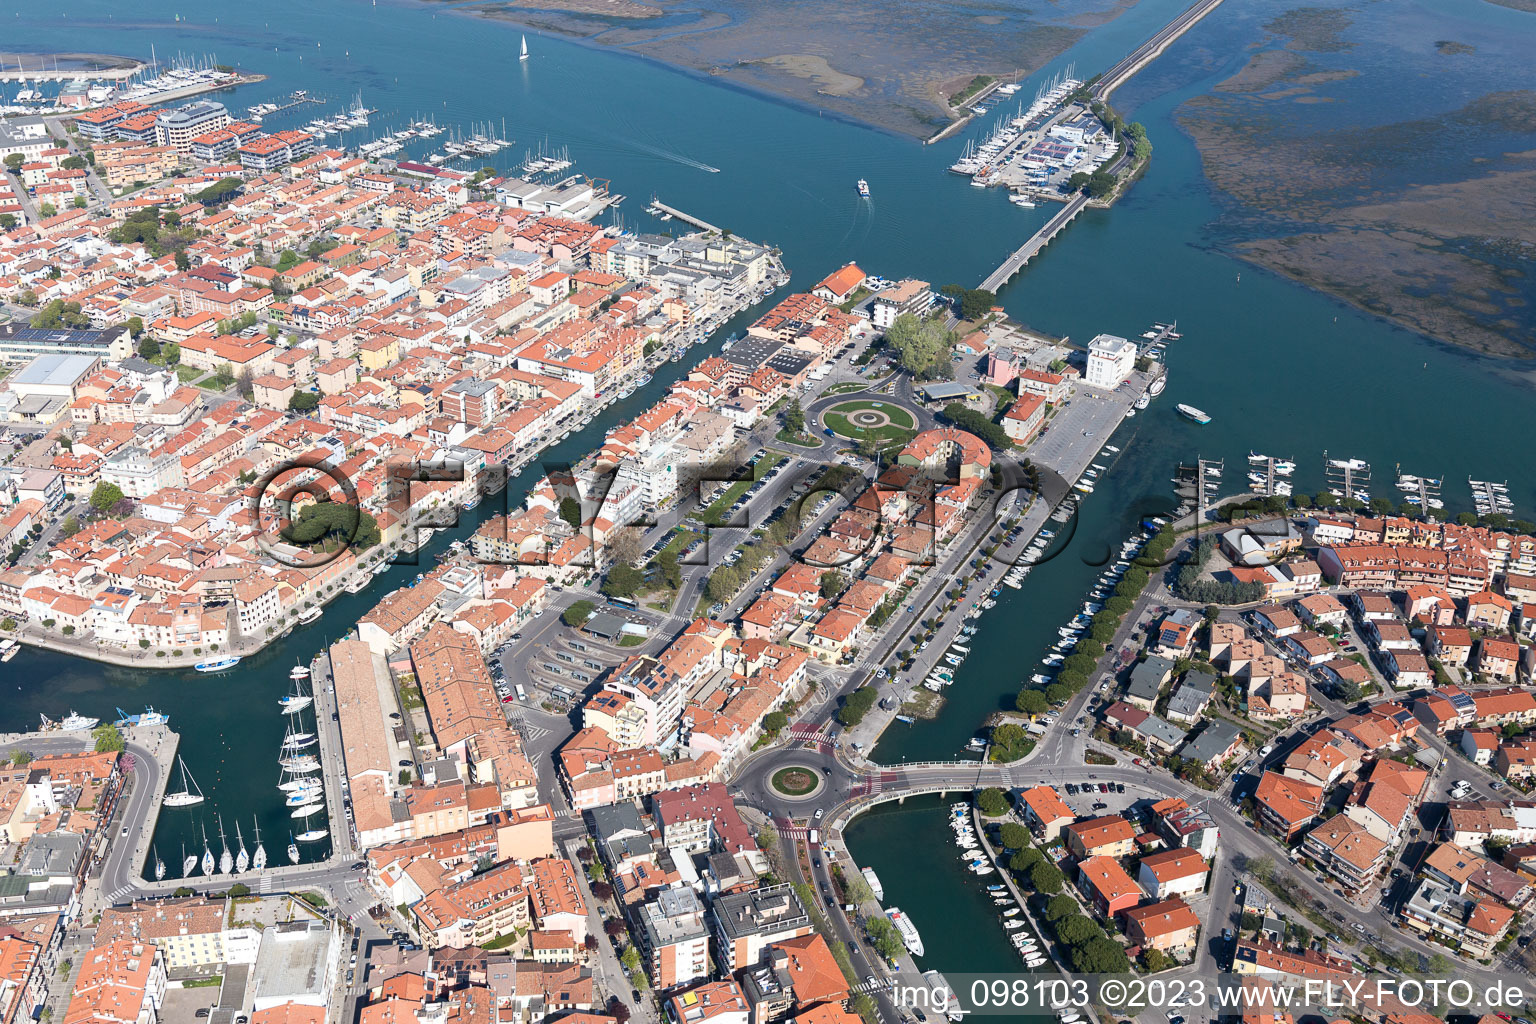 Grado im Bundesland Friaul-Julisch Venetien, Italien aus der Luft betrachtet